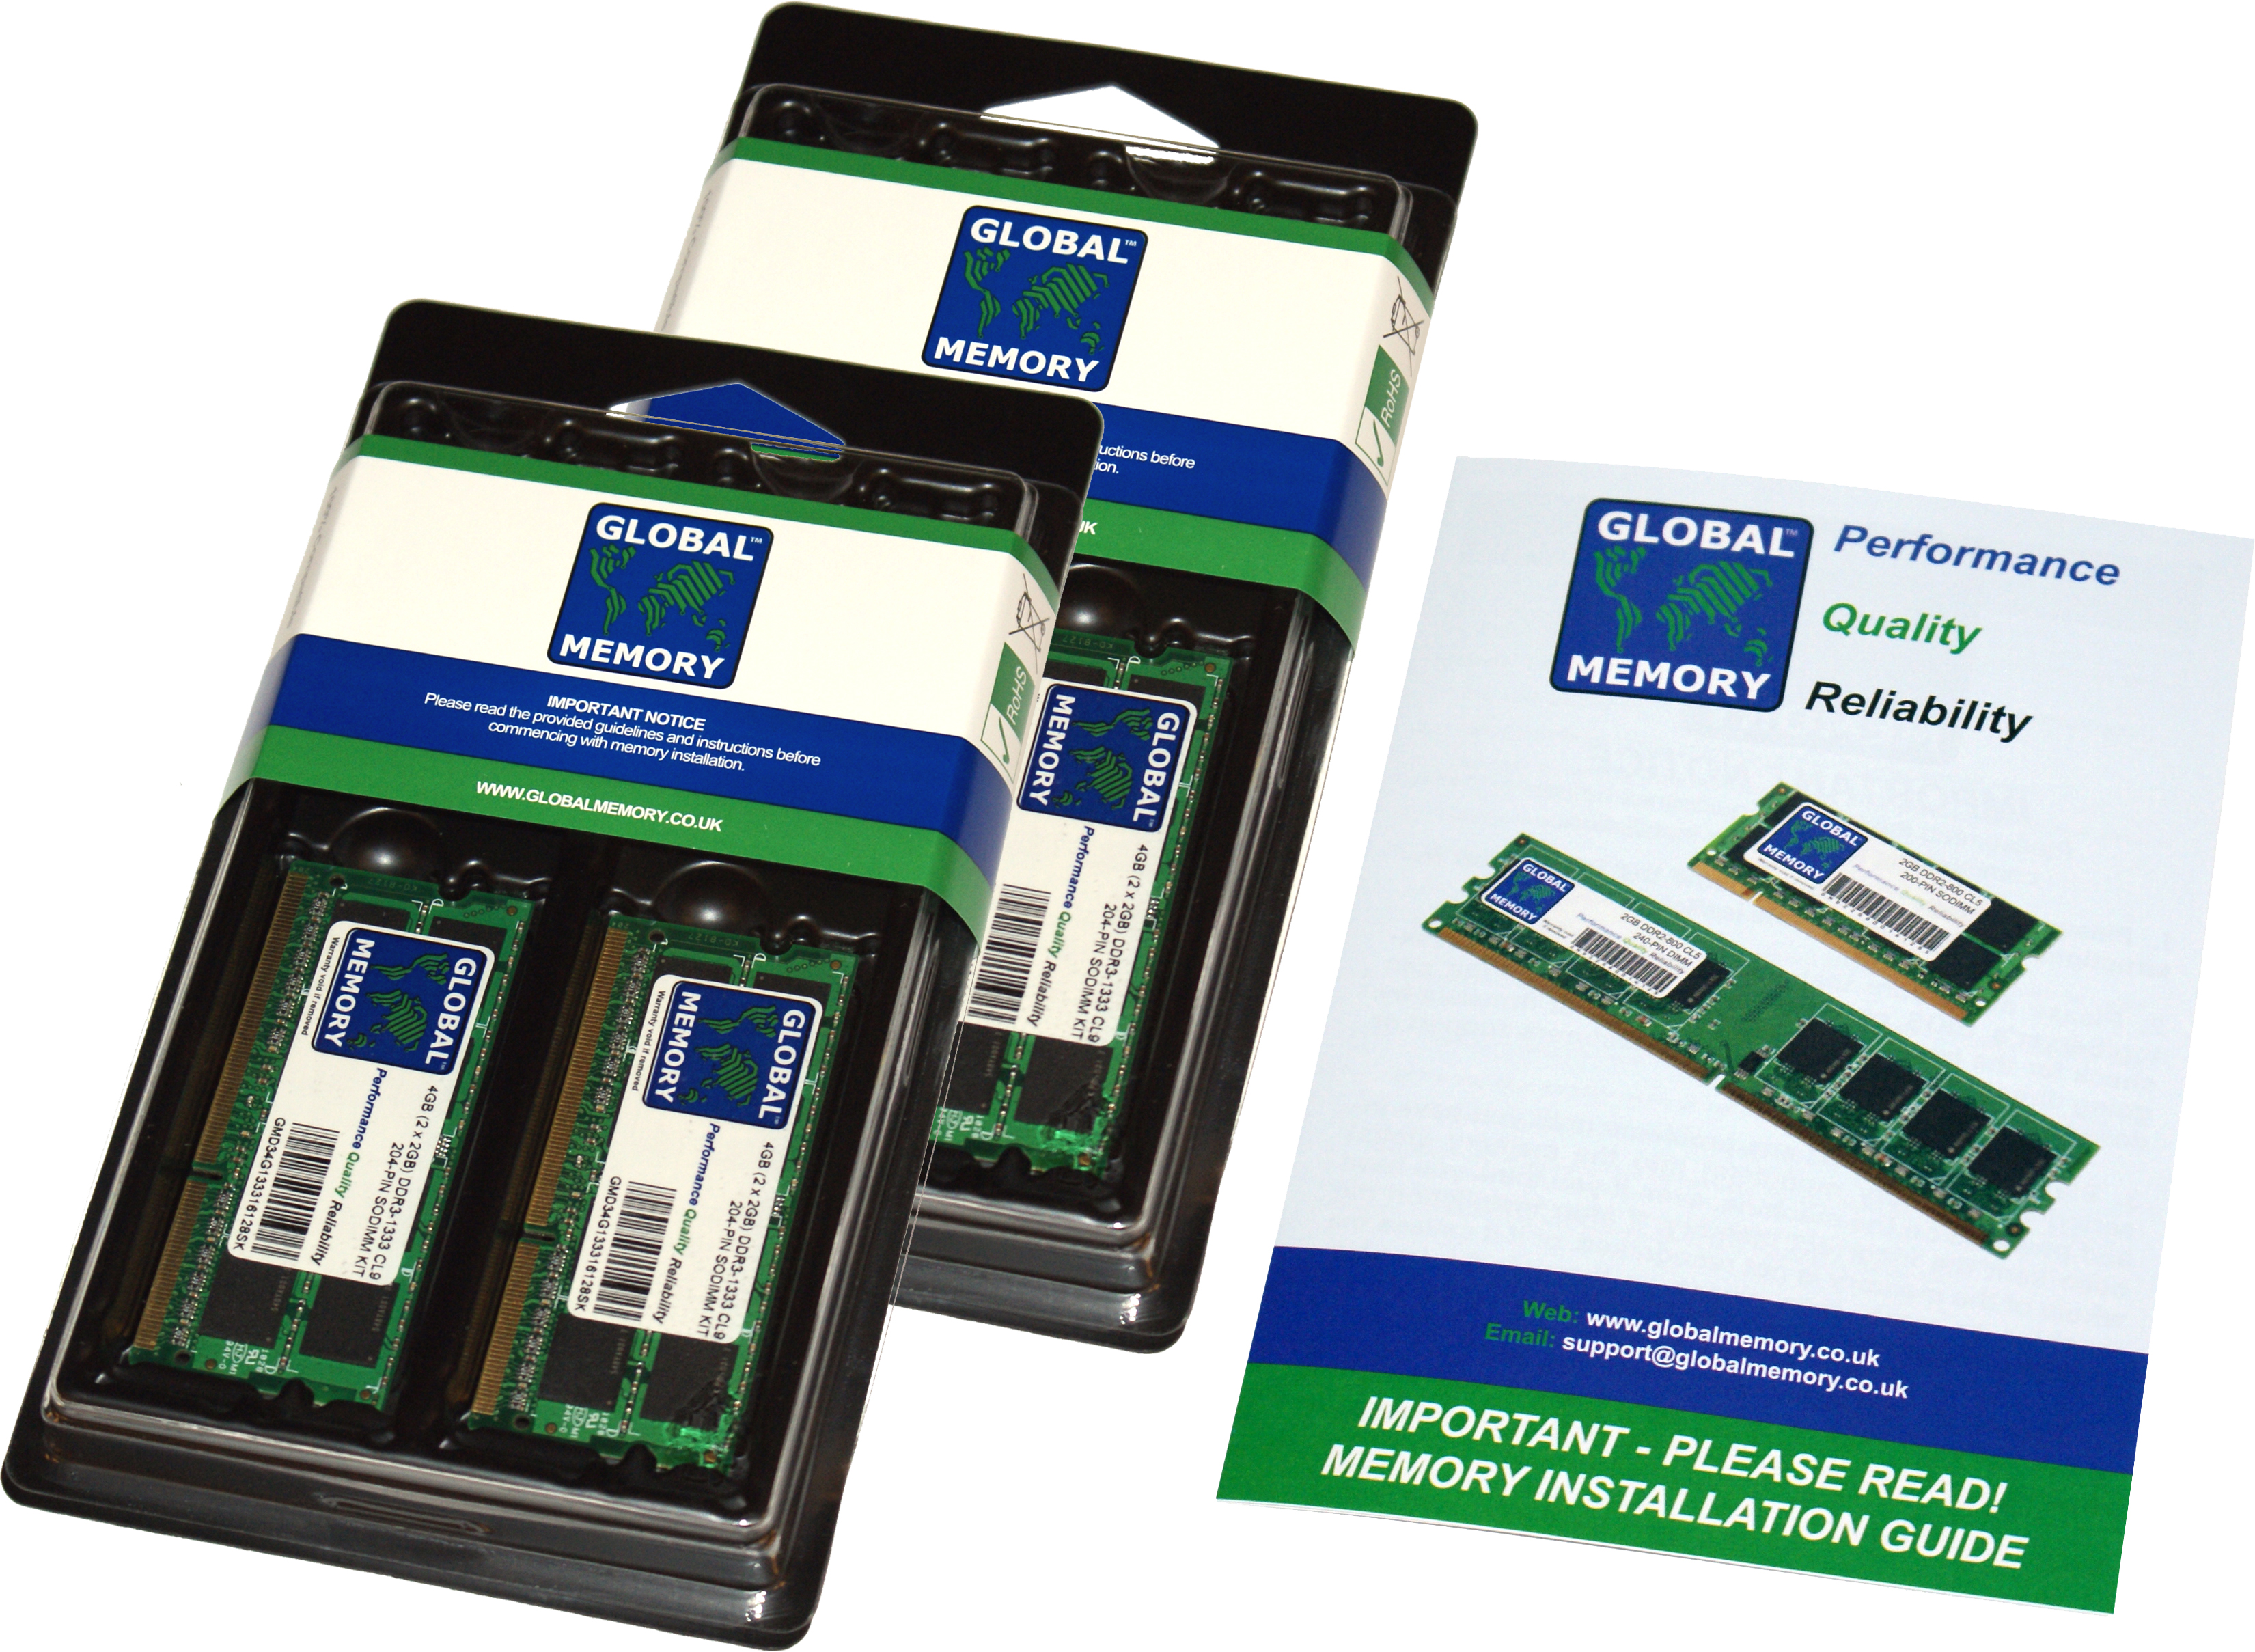 128GB (4 x 32GB) DDR4 2400MHz PC4-19200 260-PIN SODIMM MEMORY RAM KIT FOR FUJITSU LAPTOPS/NOTEBOOKS